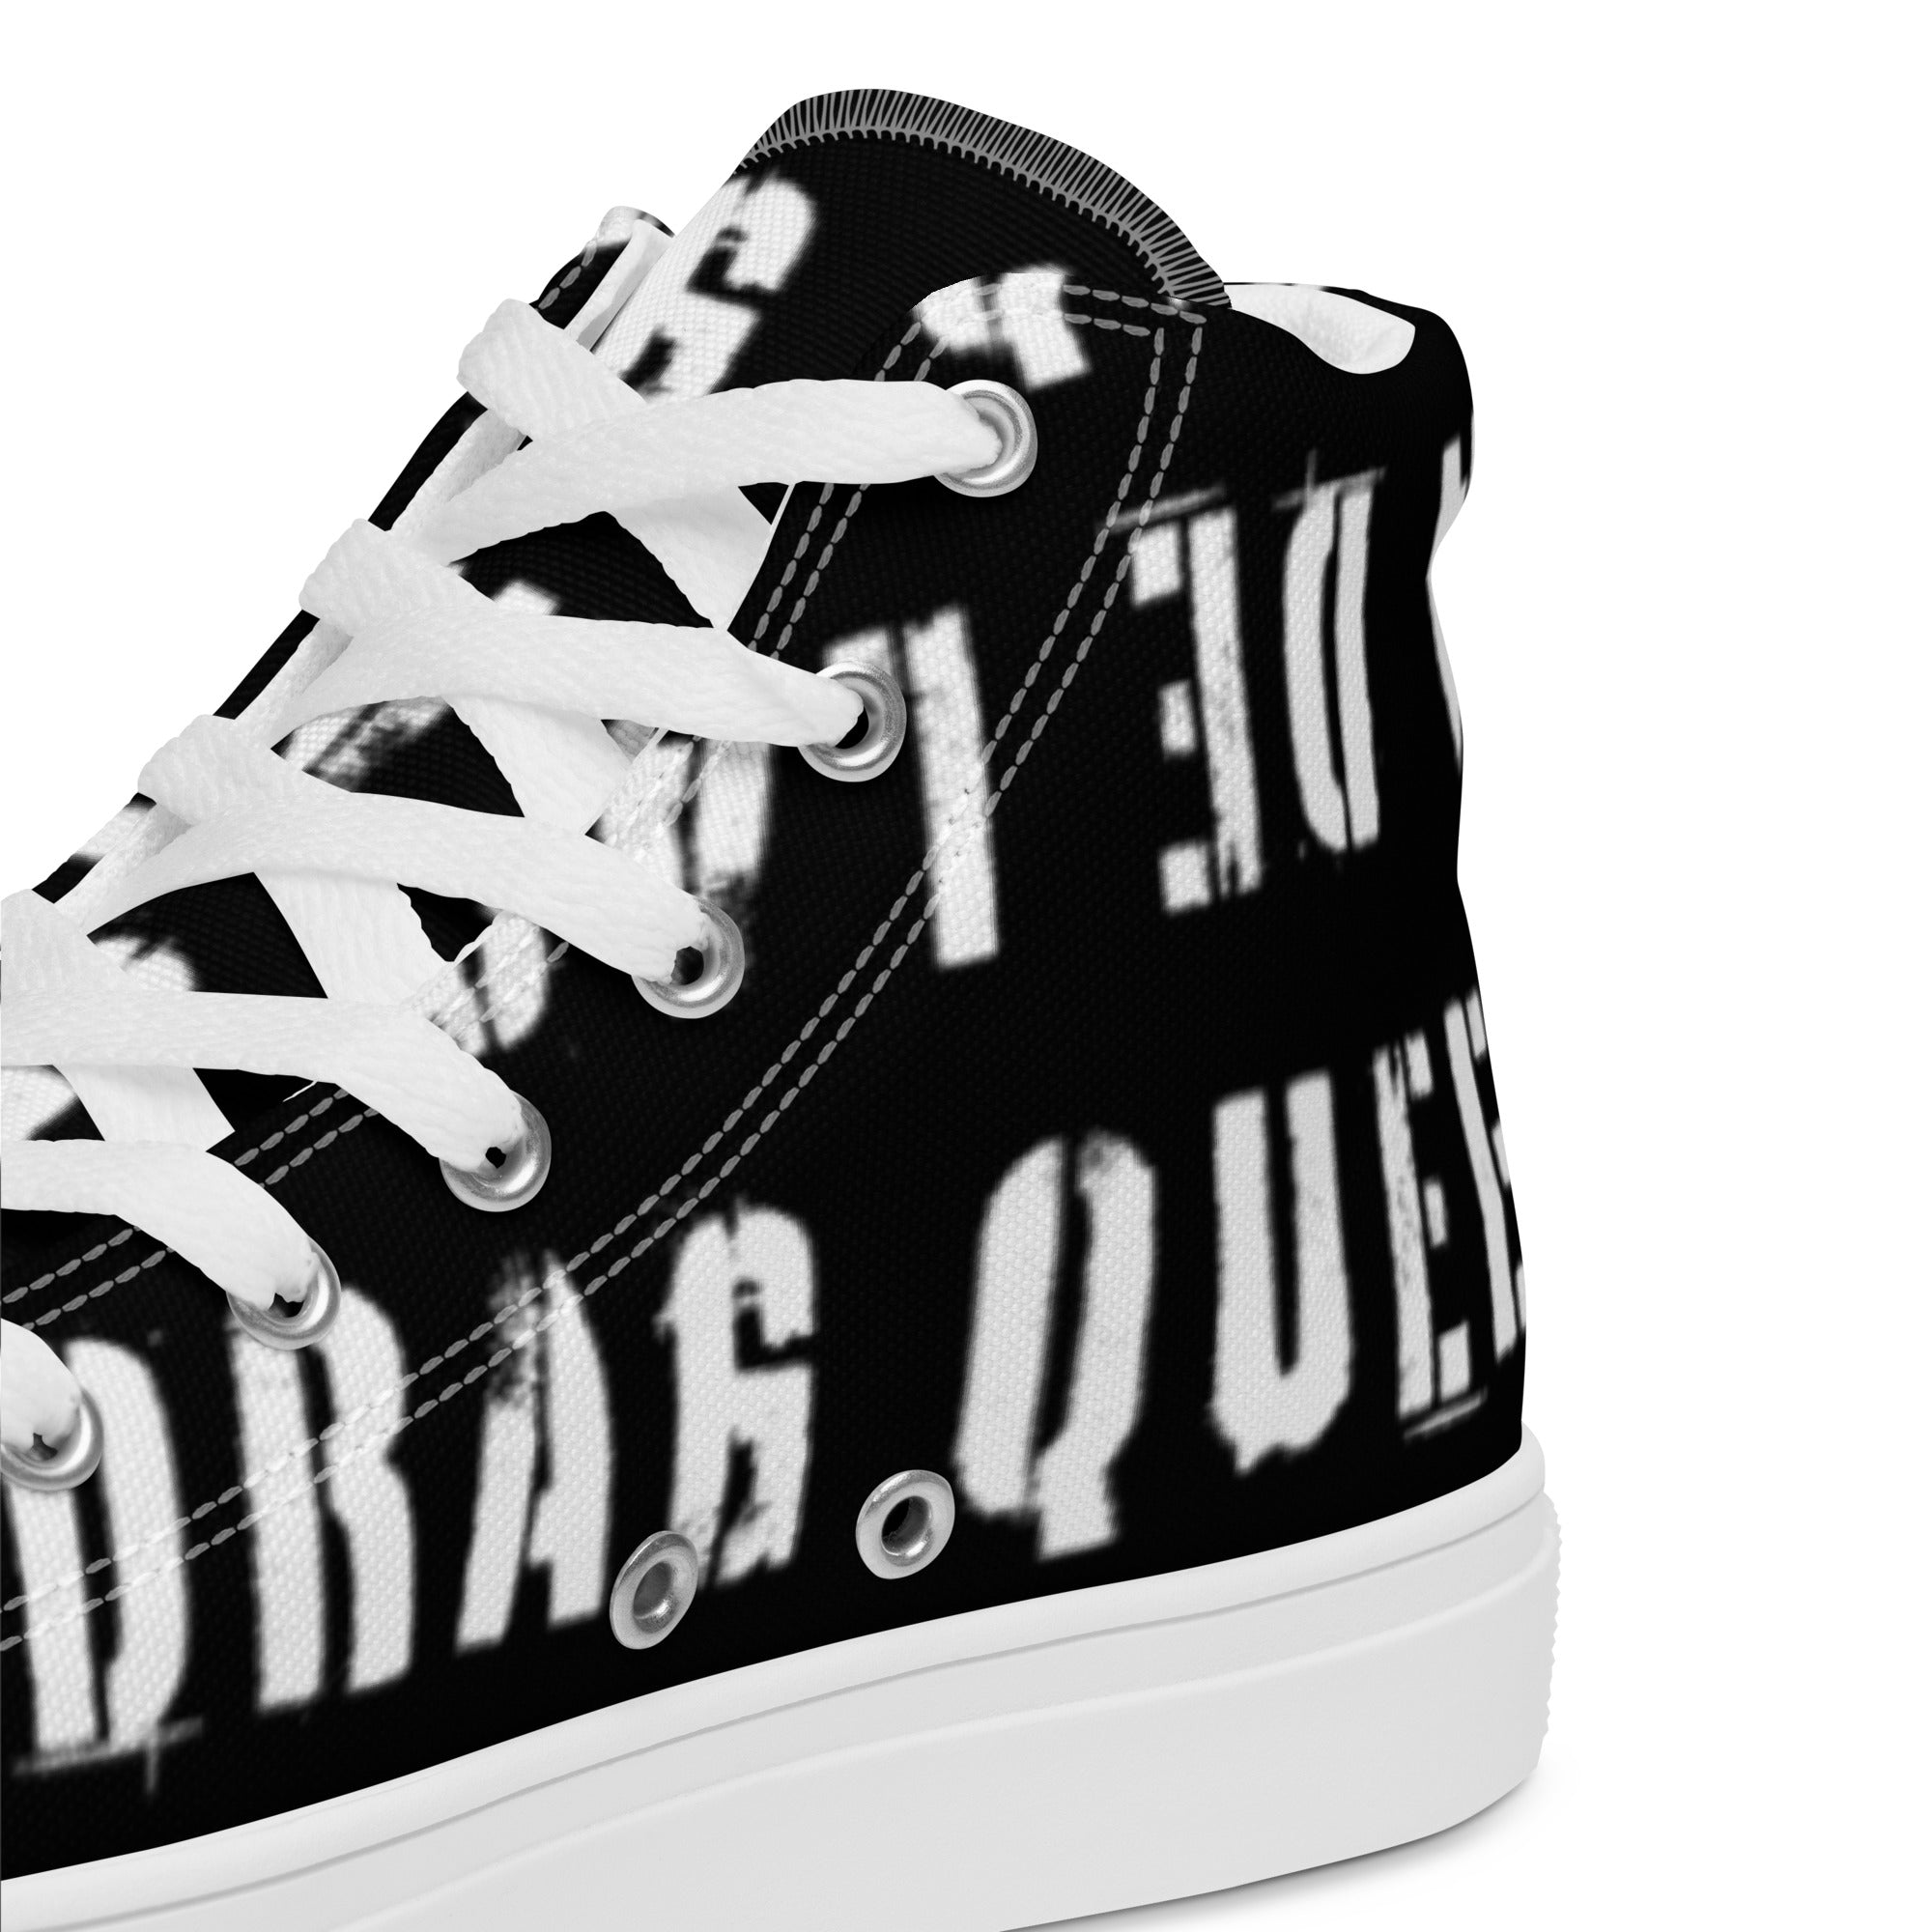 Dia De Las Drag Queens Logo 01 High Top Protest Shoes